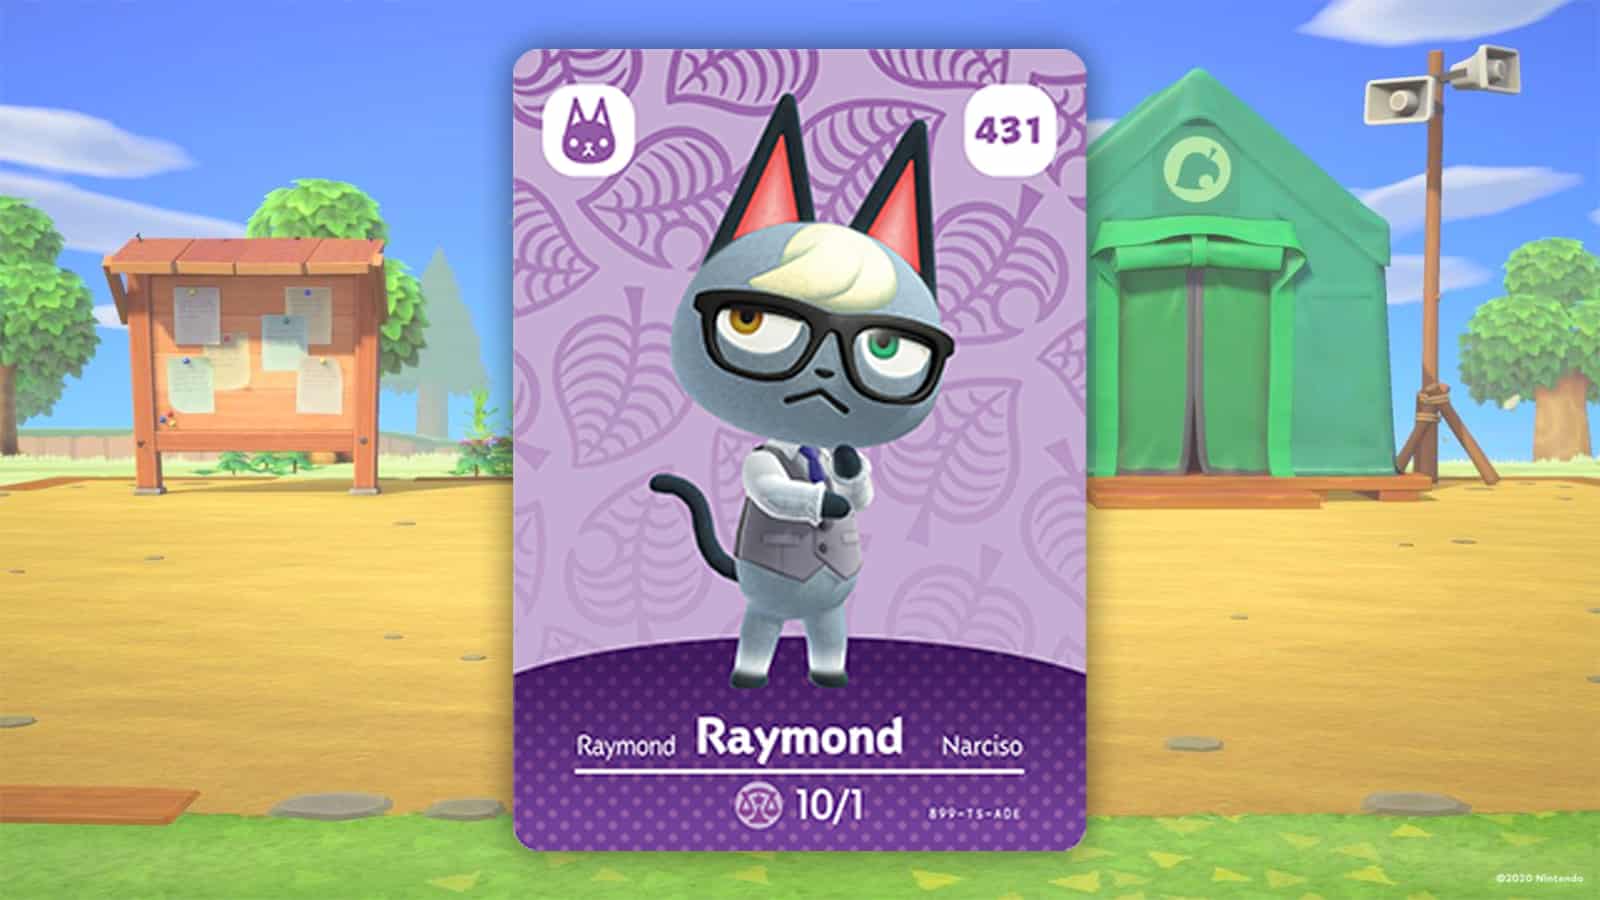 Raymong-amiibo-Karte in Animal Crossing New Horizons